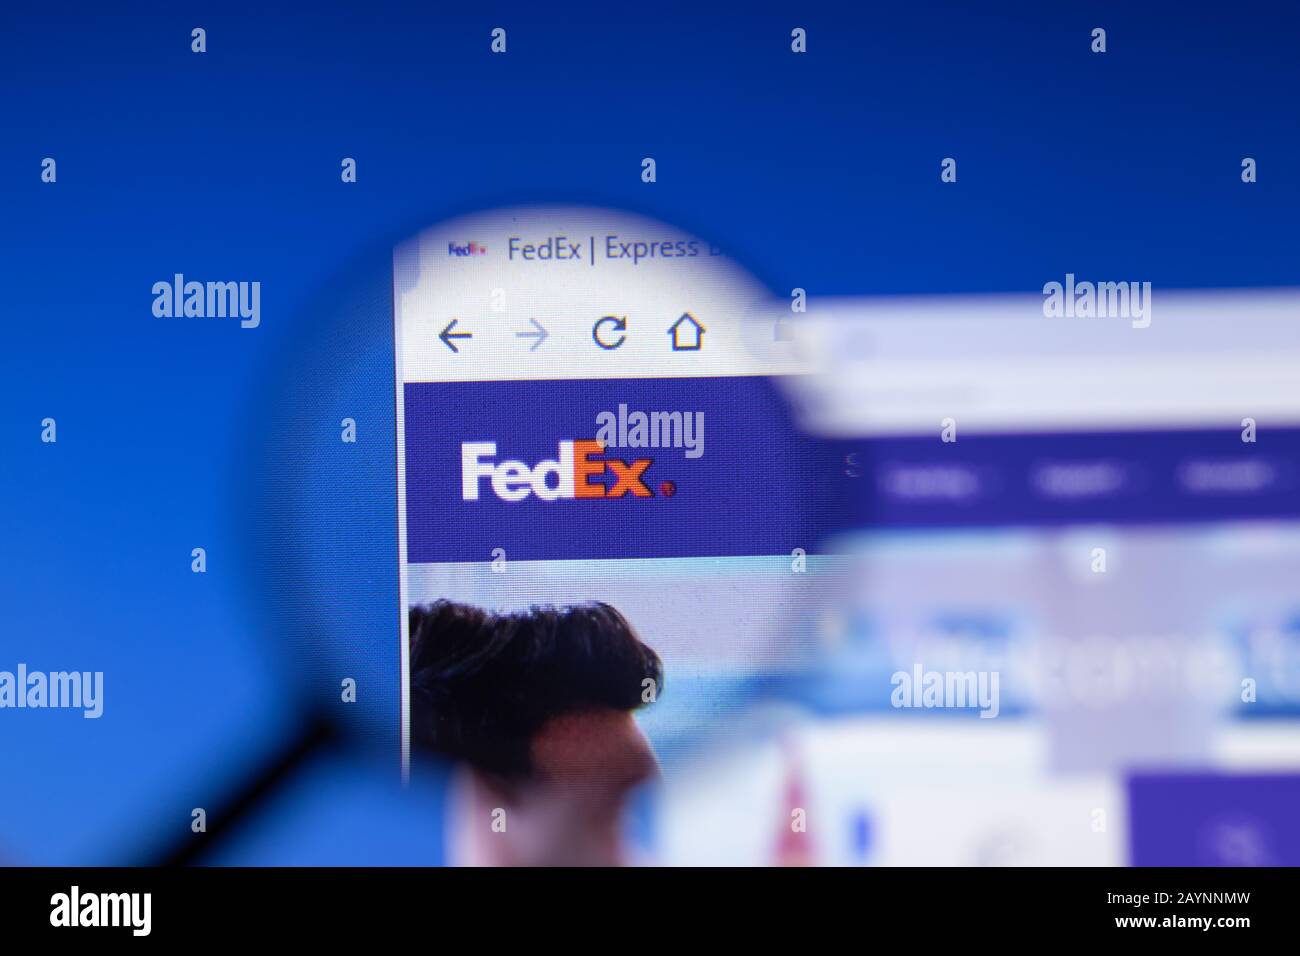 Sankt Petersburg, Russland - 18. Februar 2020: Logo auf der Webseite der FedEx Express Company auf dem Laptop-Display. Bildschirm mit Symbol, Bildmaterial Stockfoto